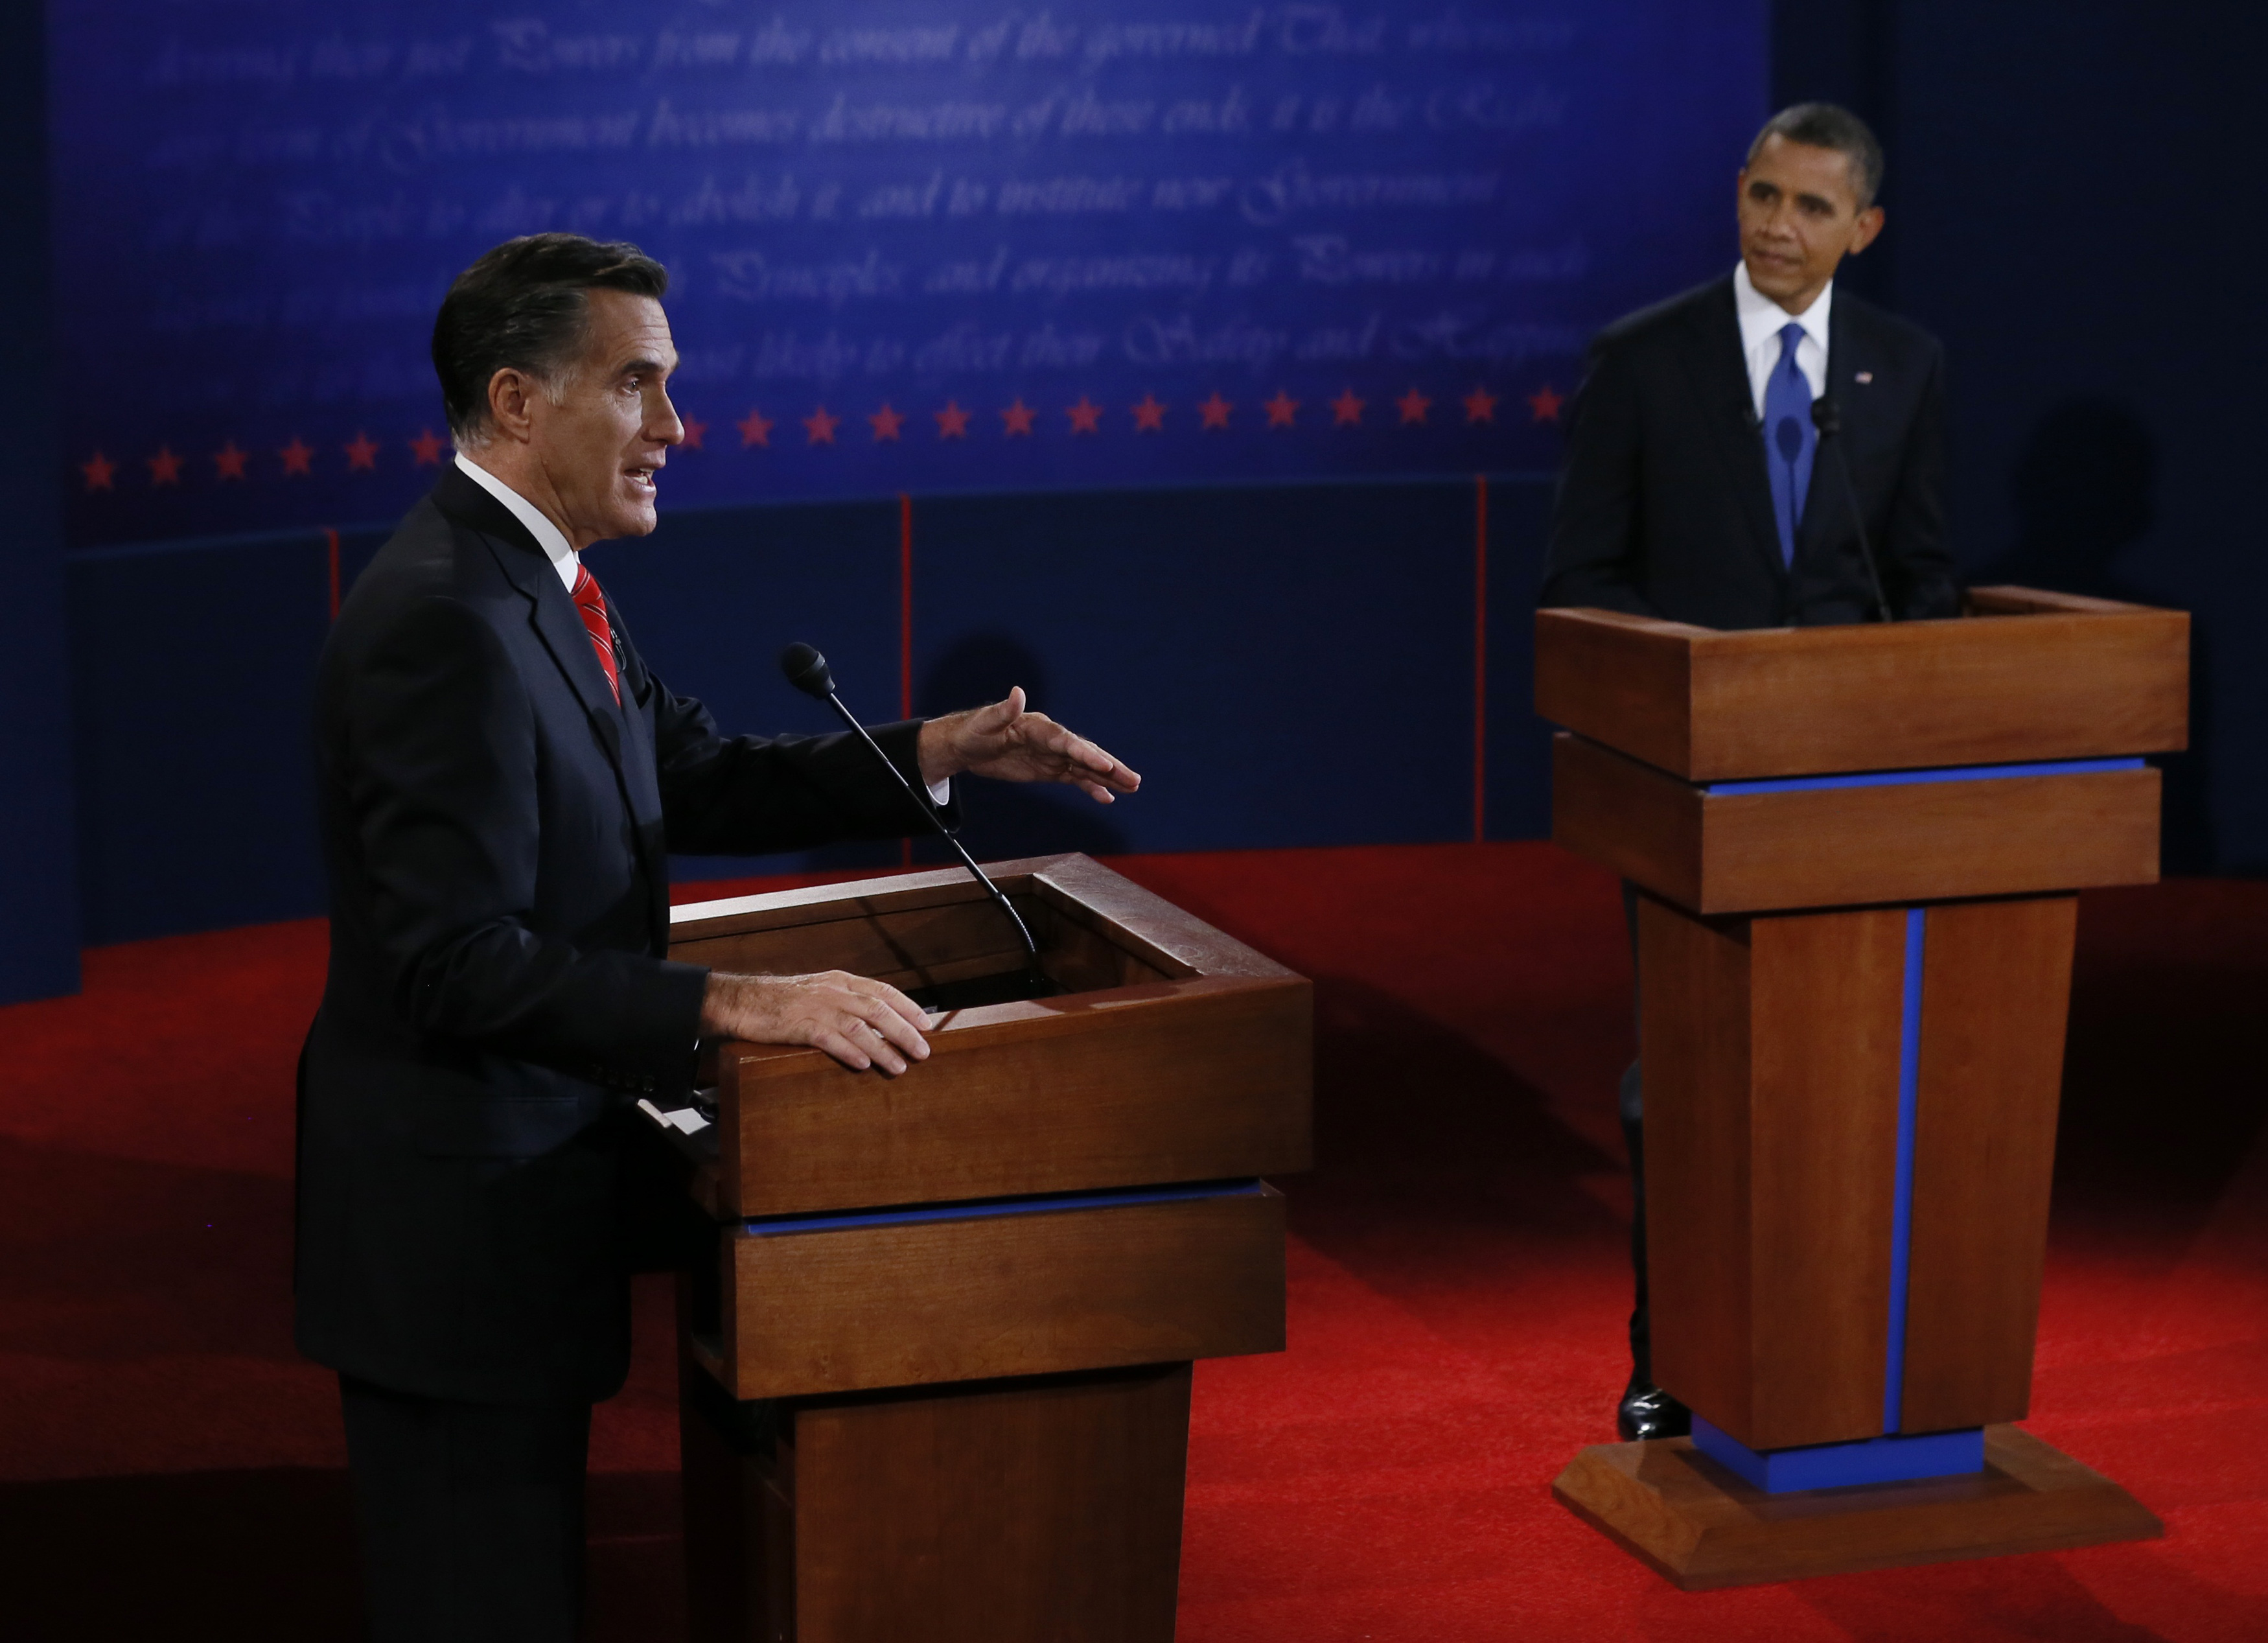 Romney and Obama at Denver debate